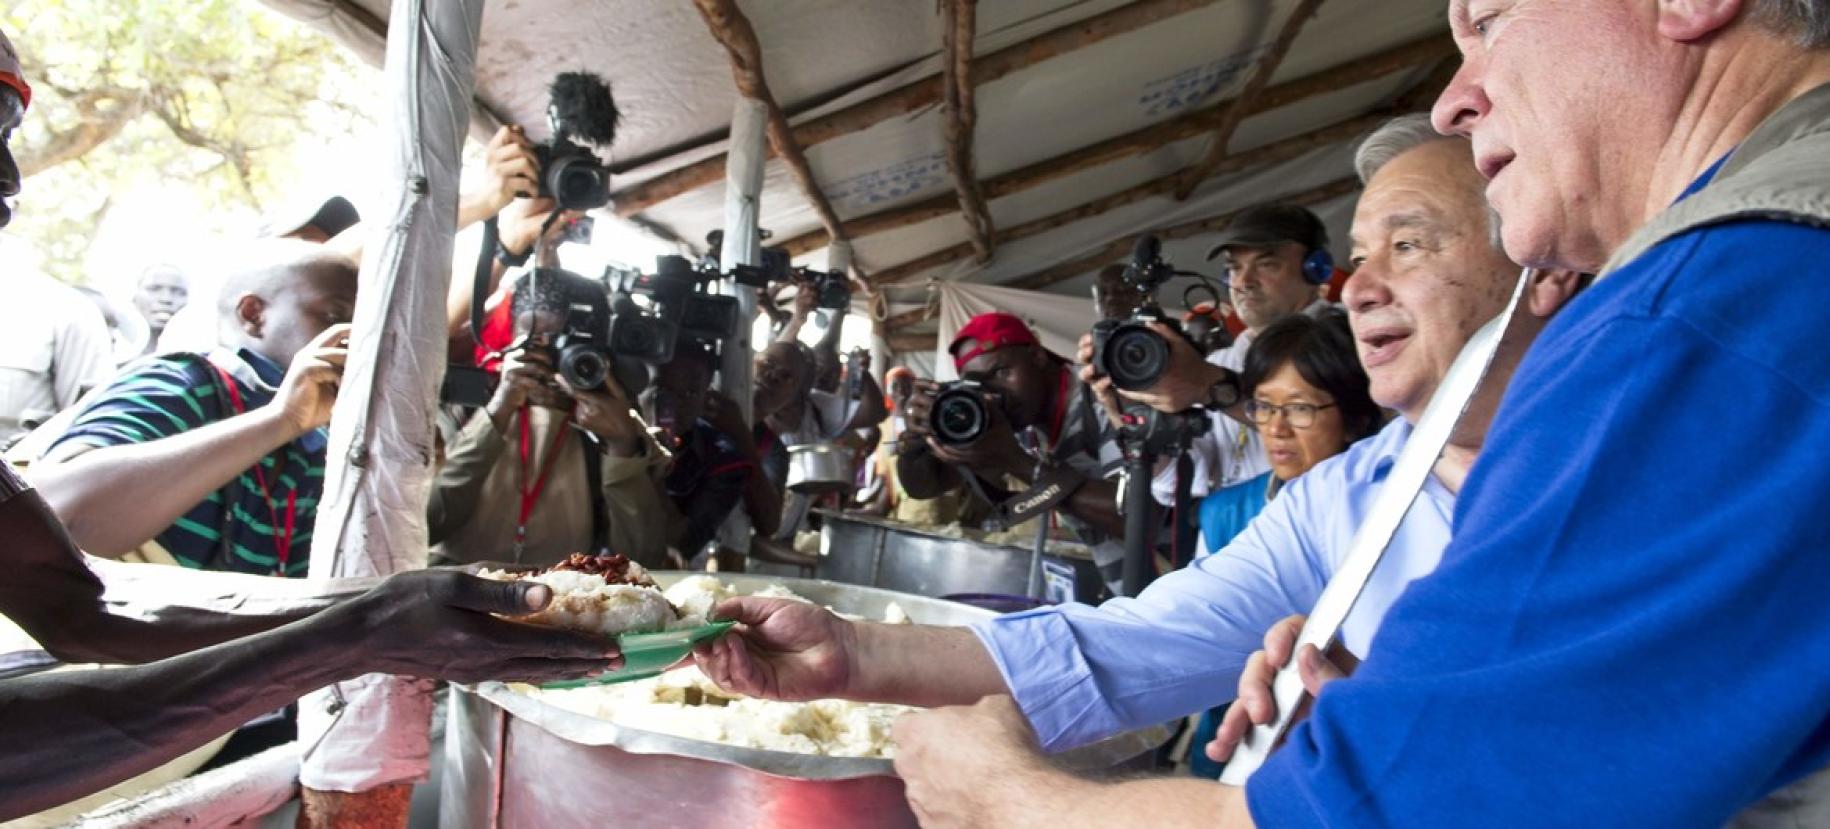 يقدّم الأمين العام أنطونيو غوتيريش مع المدير التنفيذي لبرنامج الأغذية العالمي ديفيد بيسلي وجبات غذائية في منطقة الاستقبال للاجئين الوافدين حديثًا في مستوطنة إمفيبي في أوغندا.